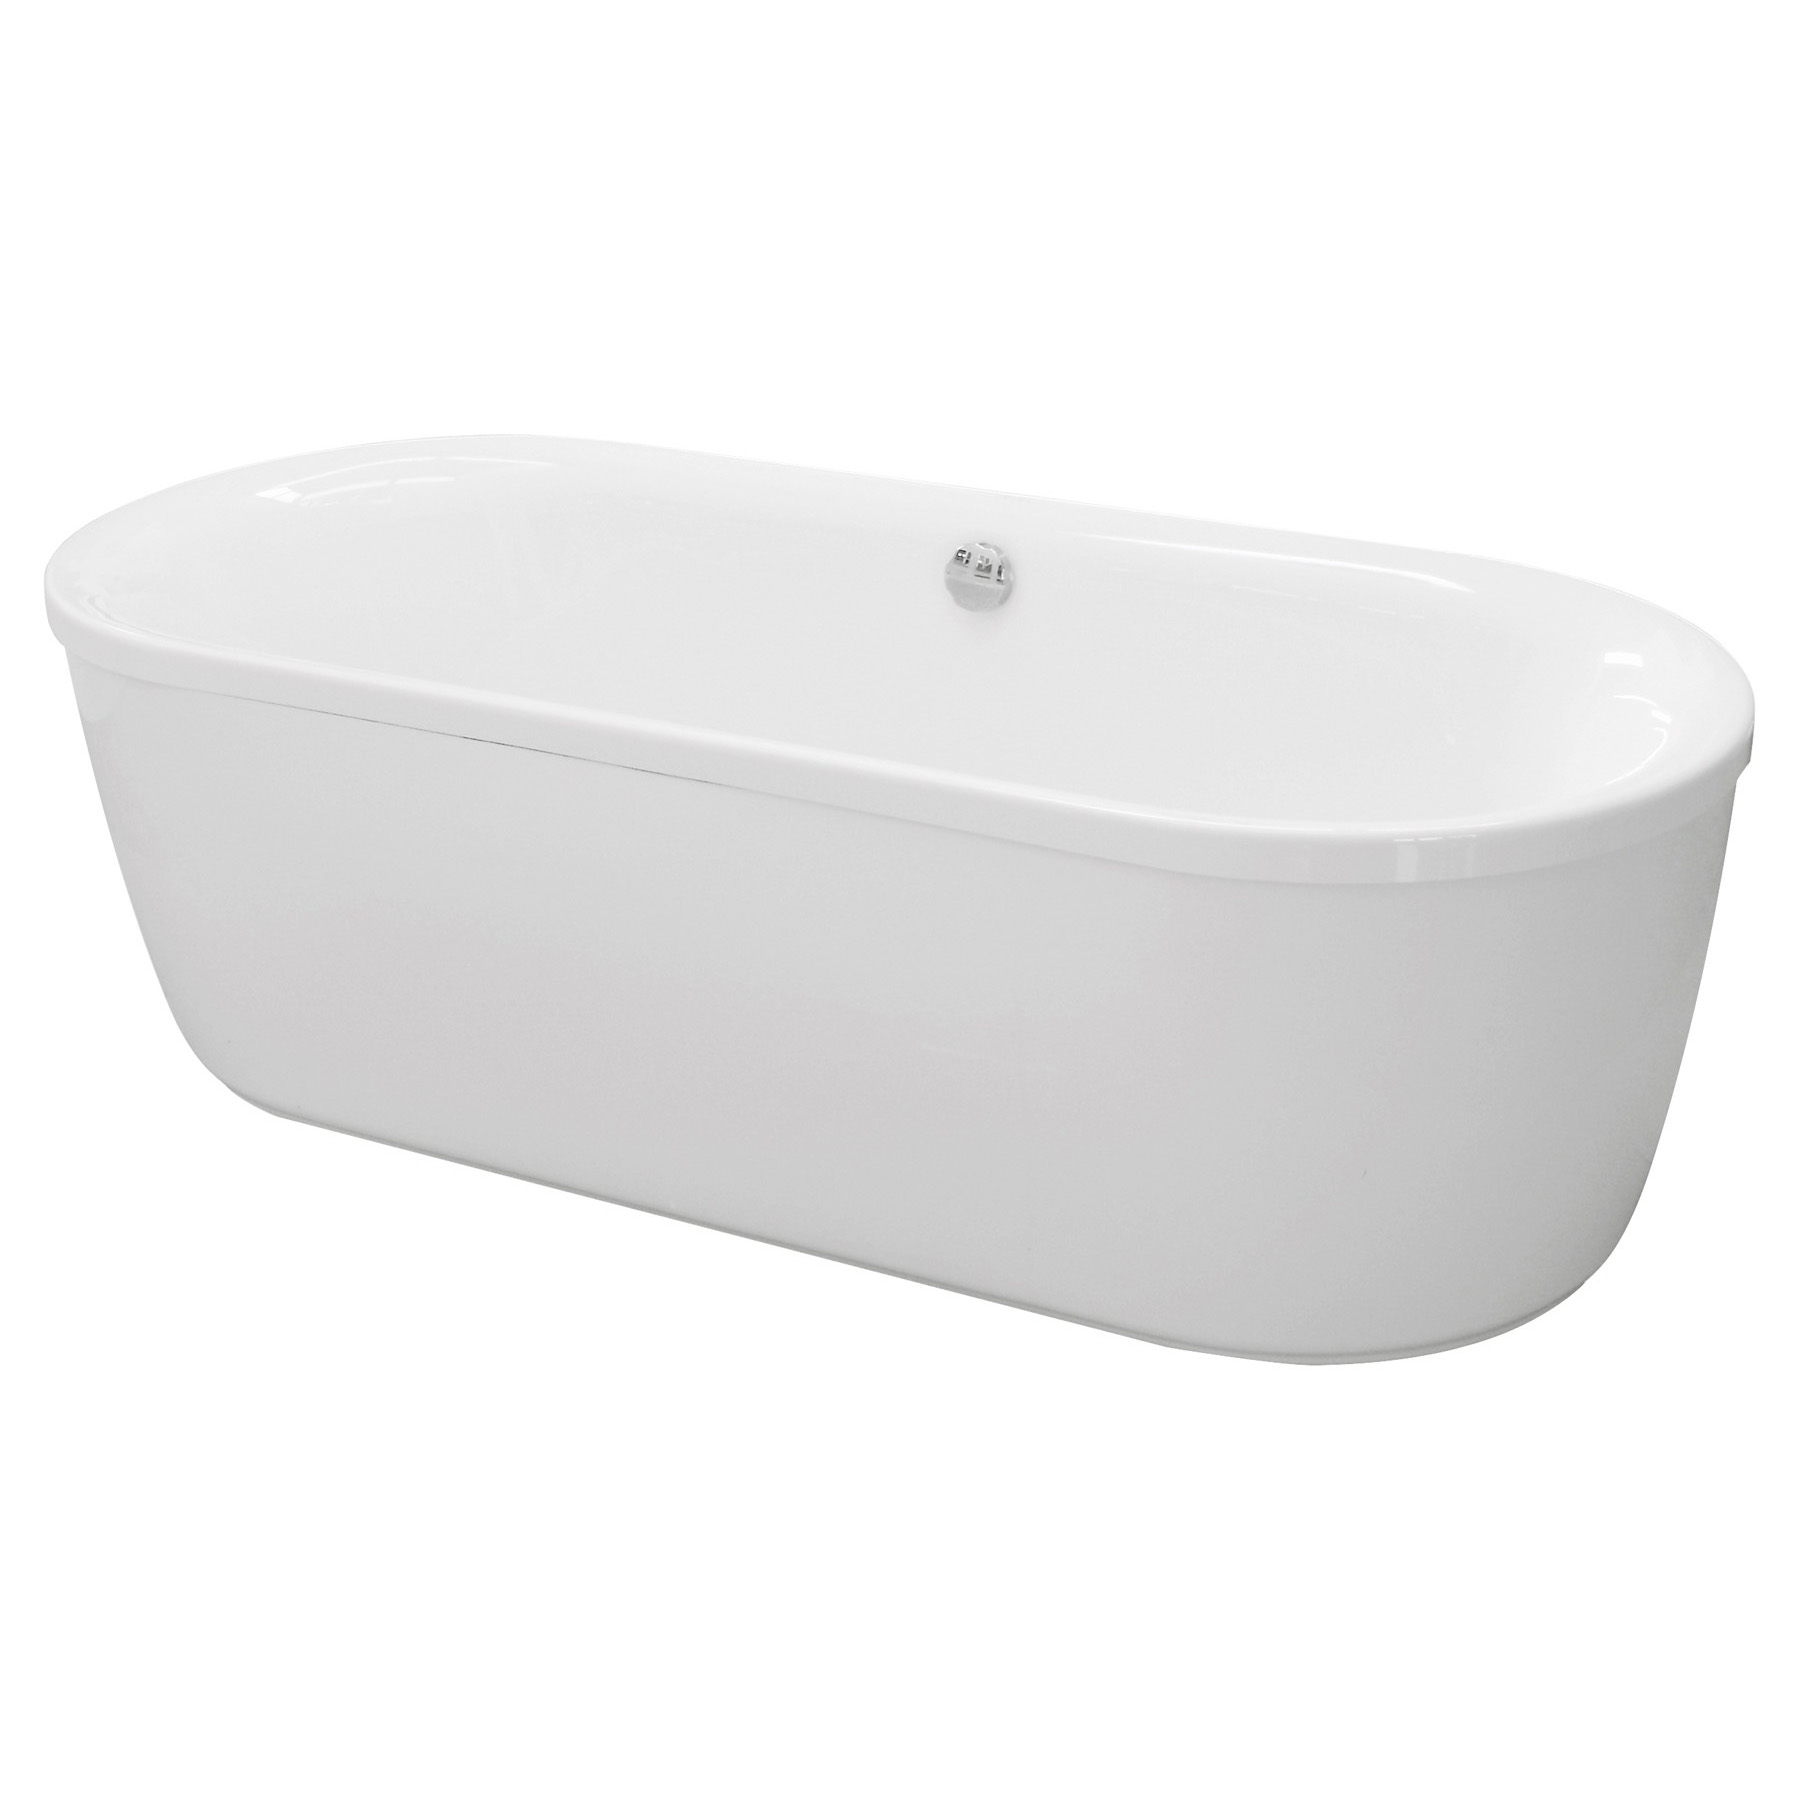 Акриловая ванна Cezares Metauro Central 180х80 на каркасе, цвет белый METAURO-Central-180-80-40-W37+METAURO-Central-MF - фото 1